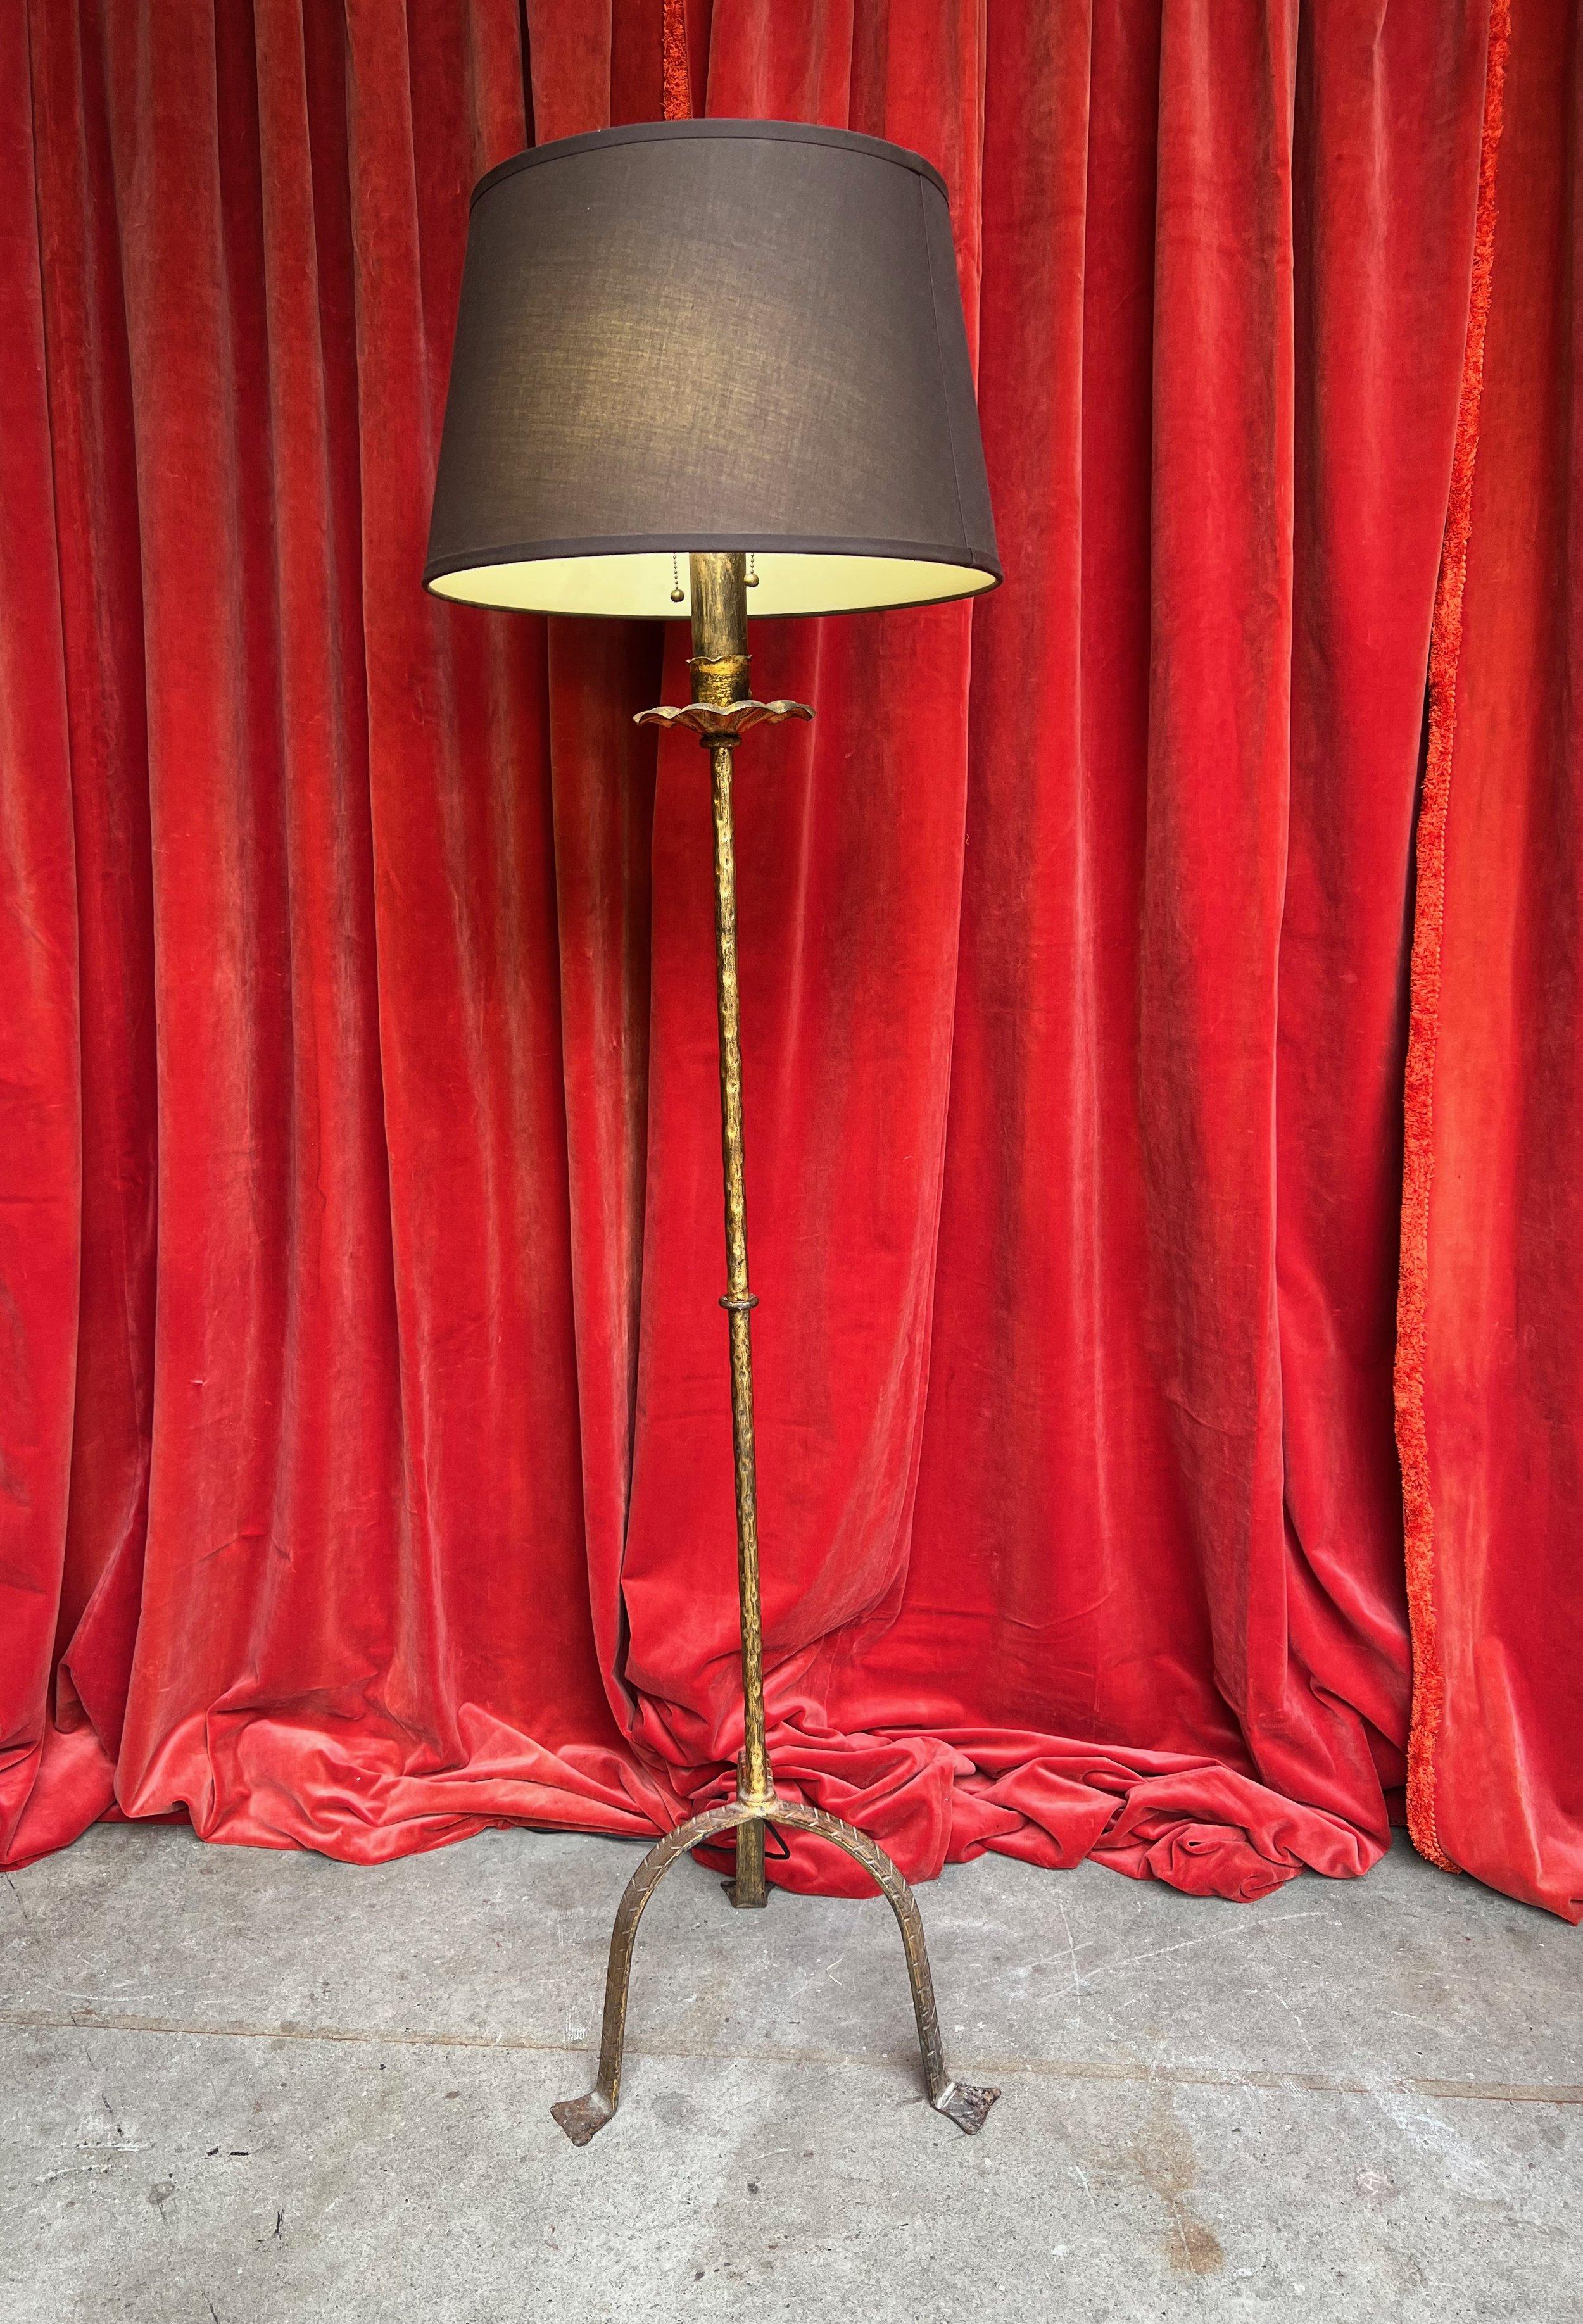 Diese klassische Stehlampe aus Eisen ist eine atemberaubende Ergänzung für jeden Wohnbereich. Die handpatinierte Vergoldung verleiht ihr einen Hauch von Raffinesse. Diese in den 1950er Jahren in Spanien in Handarbeit gefertigte Lampe zeichnet sich